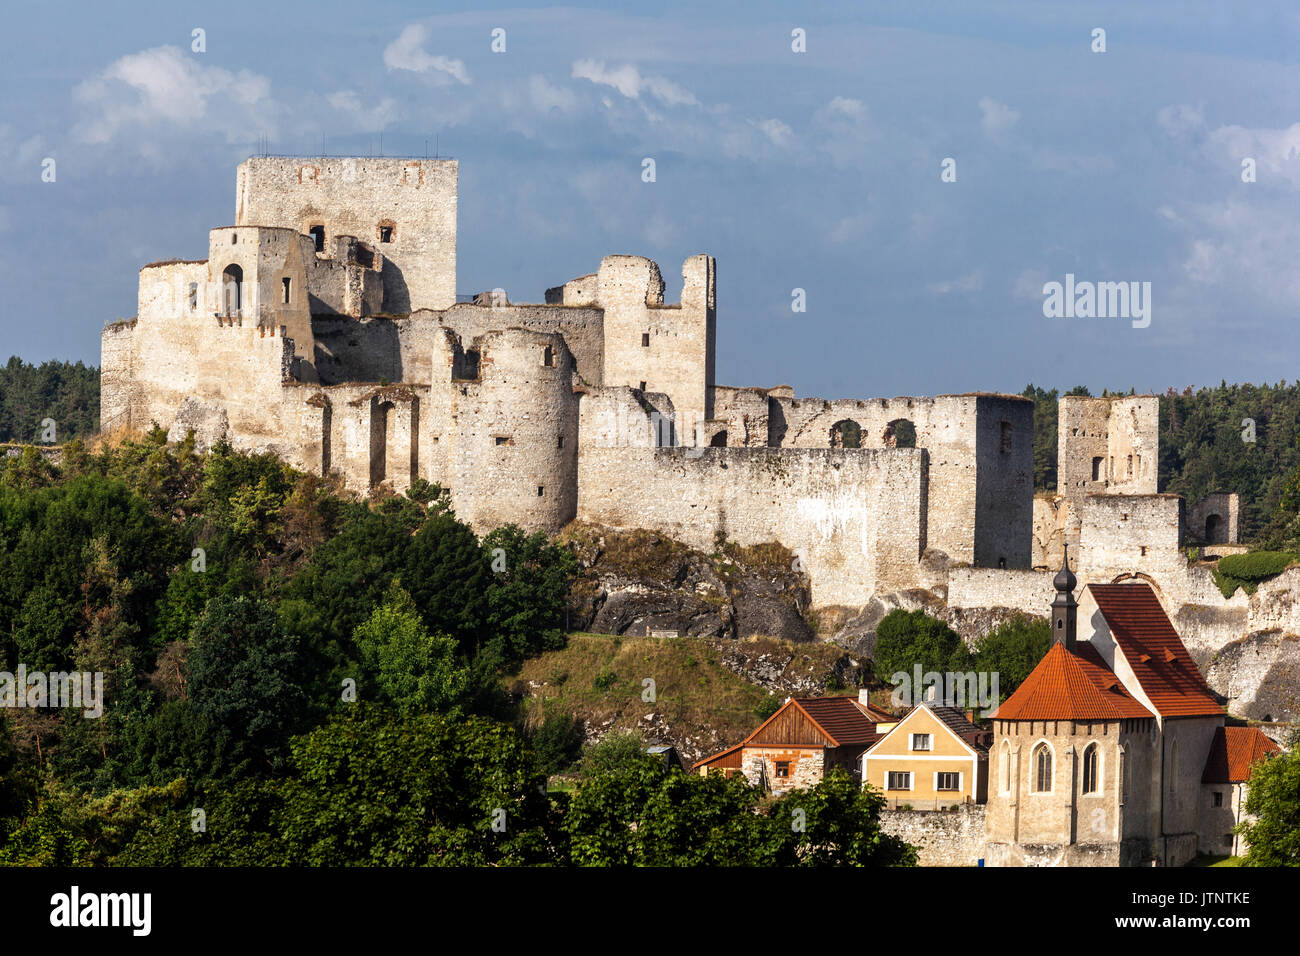 Château de Rabi, ruines du château tchèque gothique médiéval dans le paysage, République tchèque Banque D'Images